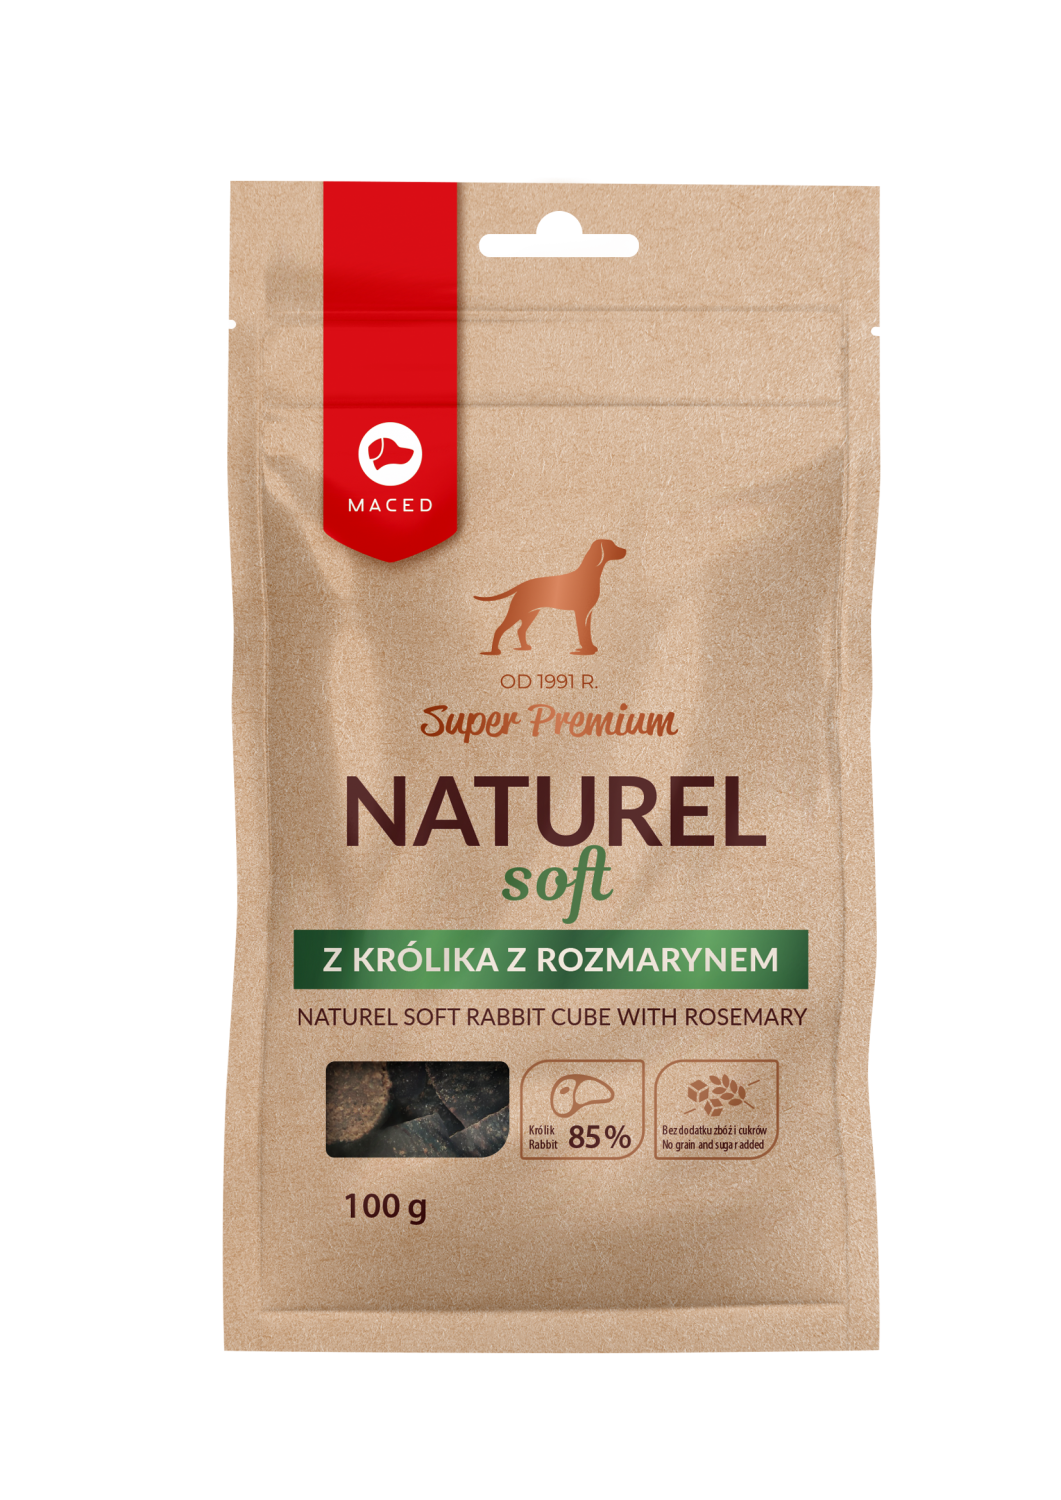 Maced Super Premium Soft Naturel przysmak dla psa królik z rozmarynem 100g